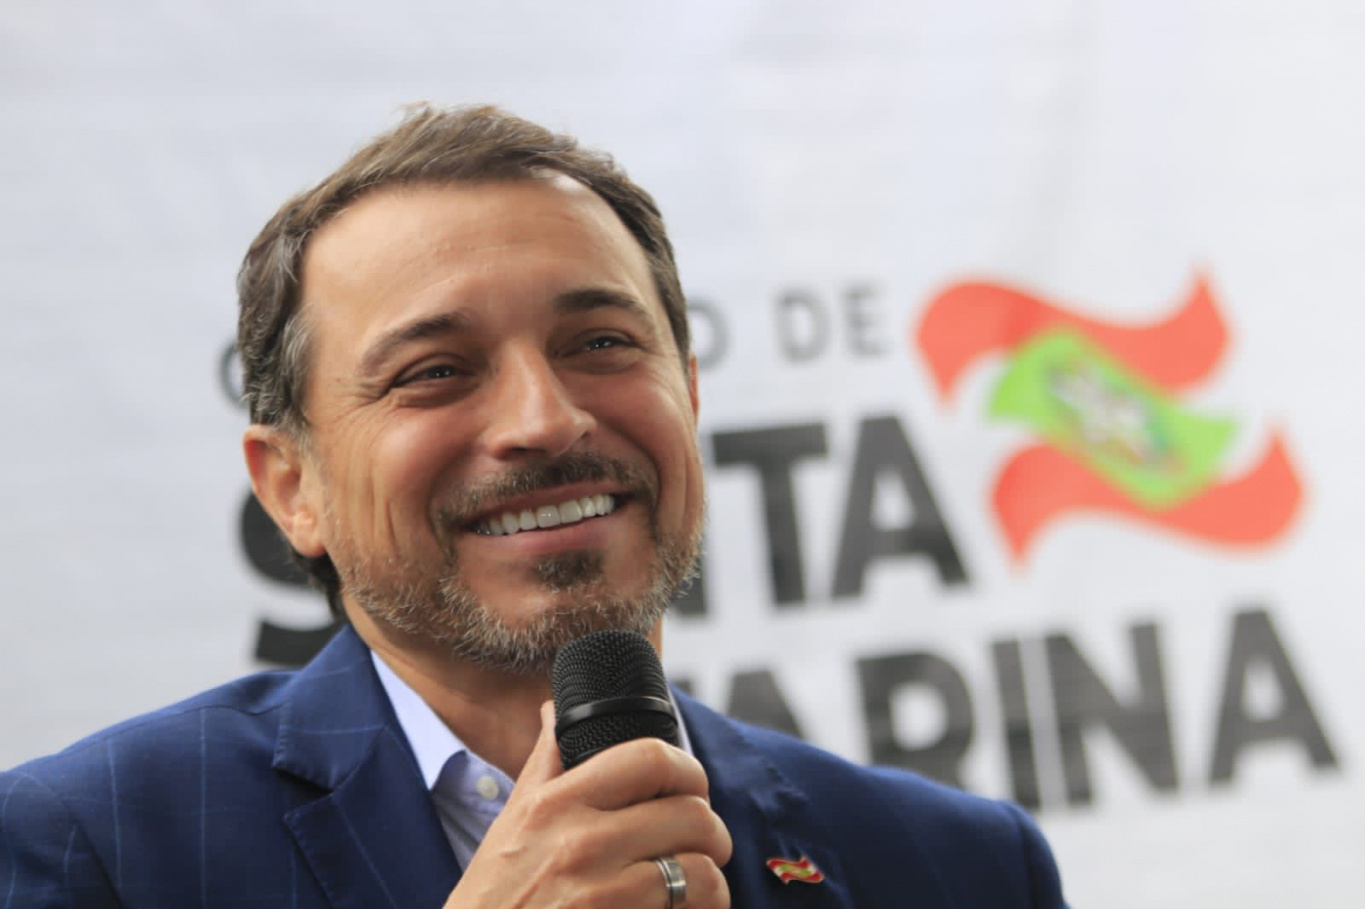 Governador Carlos Moisés da Silva, encerra seu mandato em 31 de dezembro de 2022.